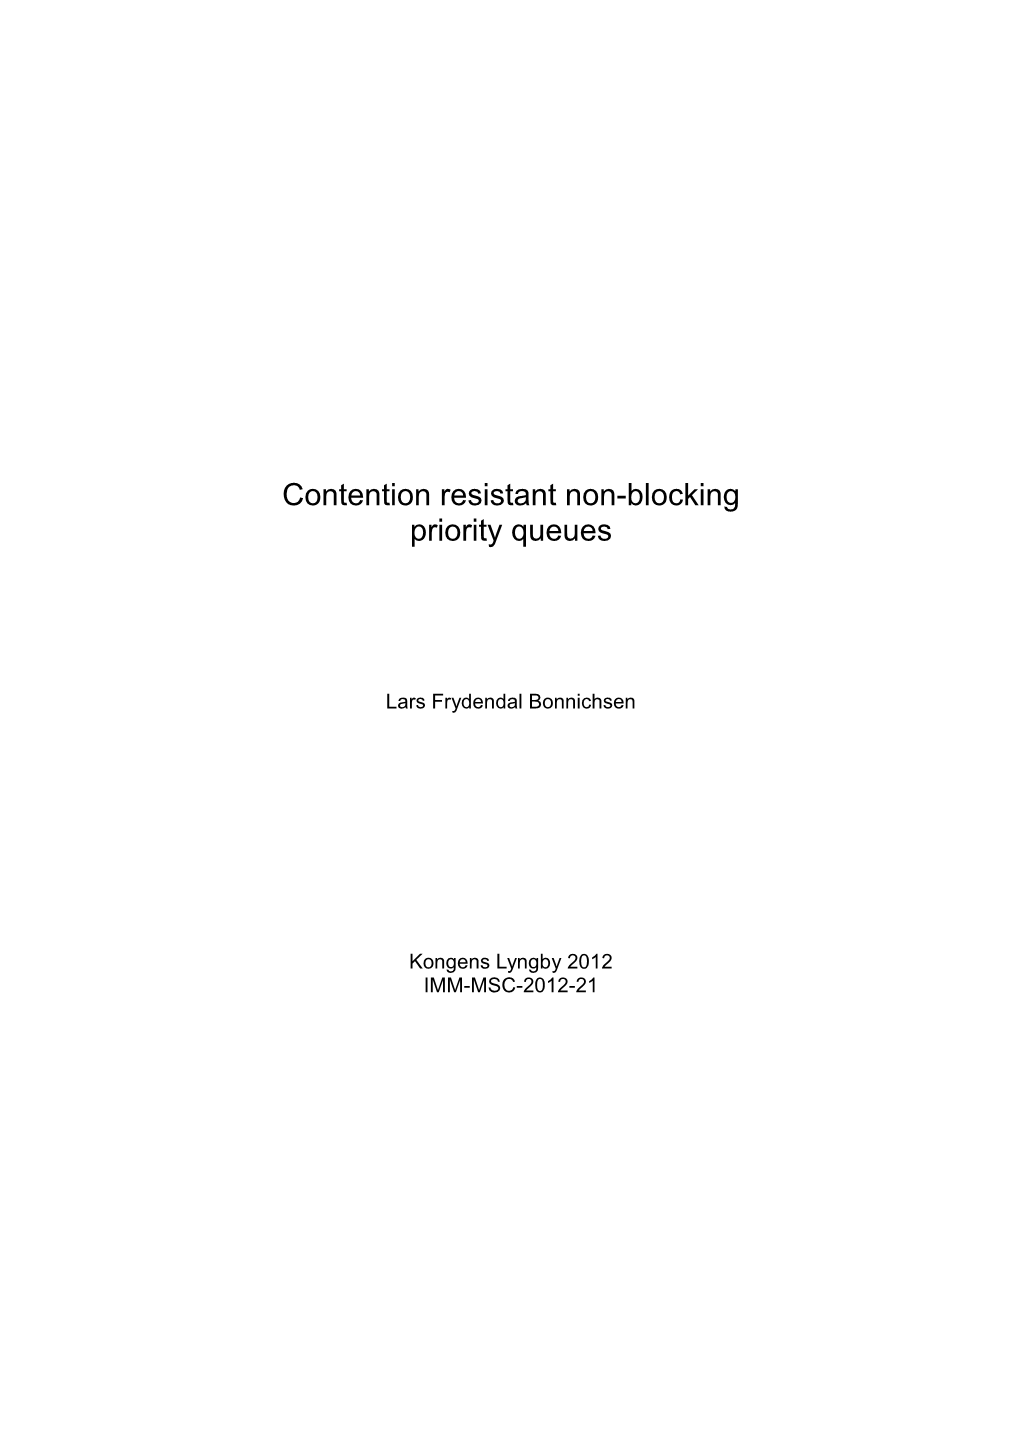 Contention Resistant Non-Blocking Priority Queues